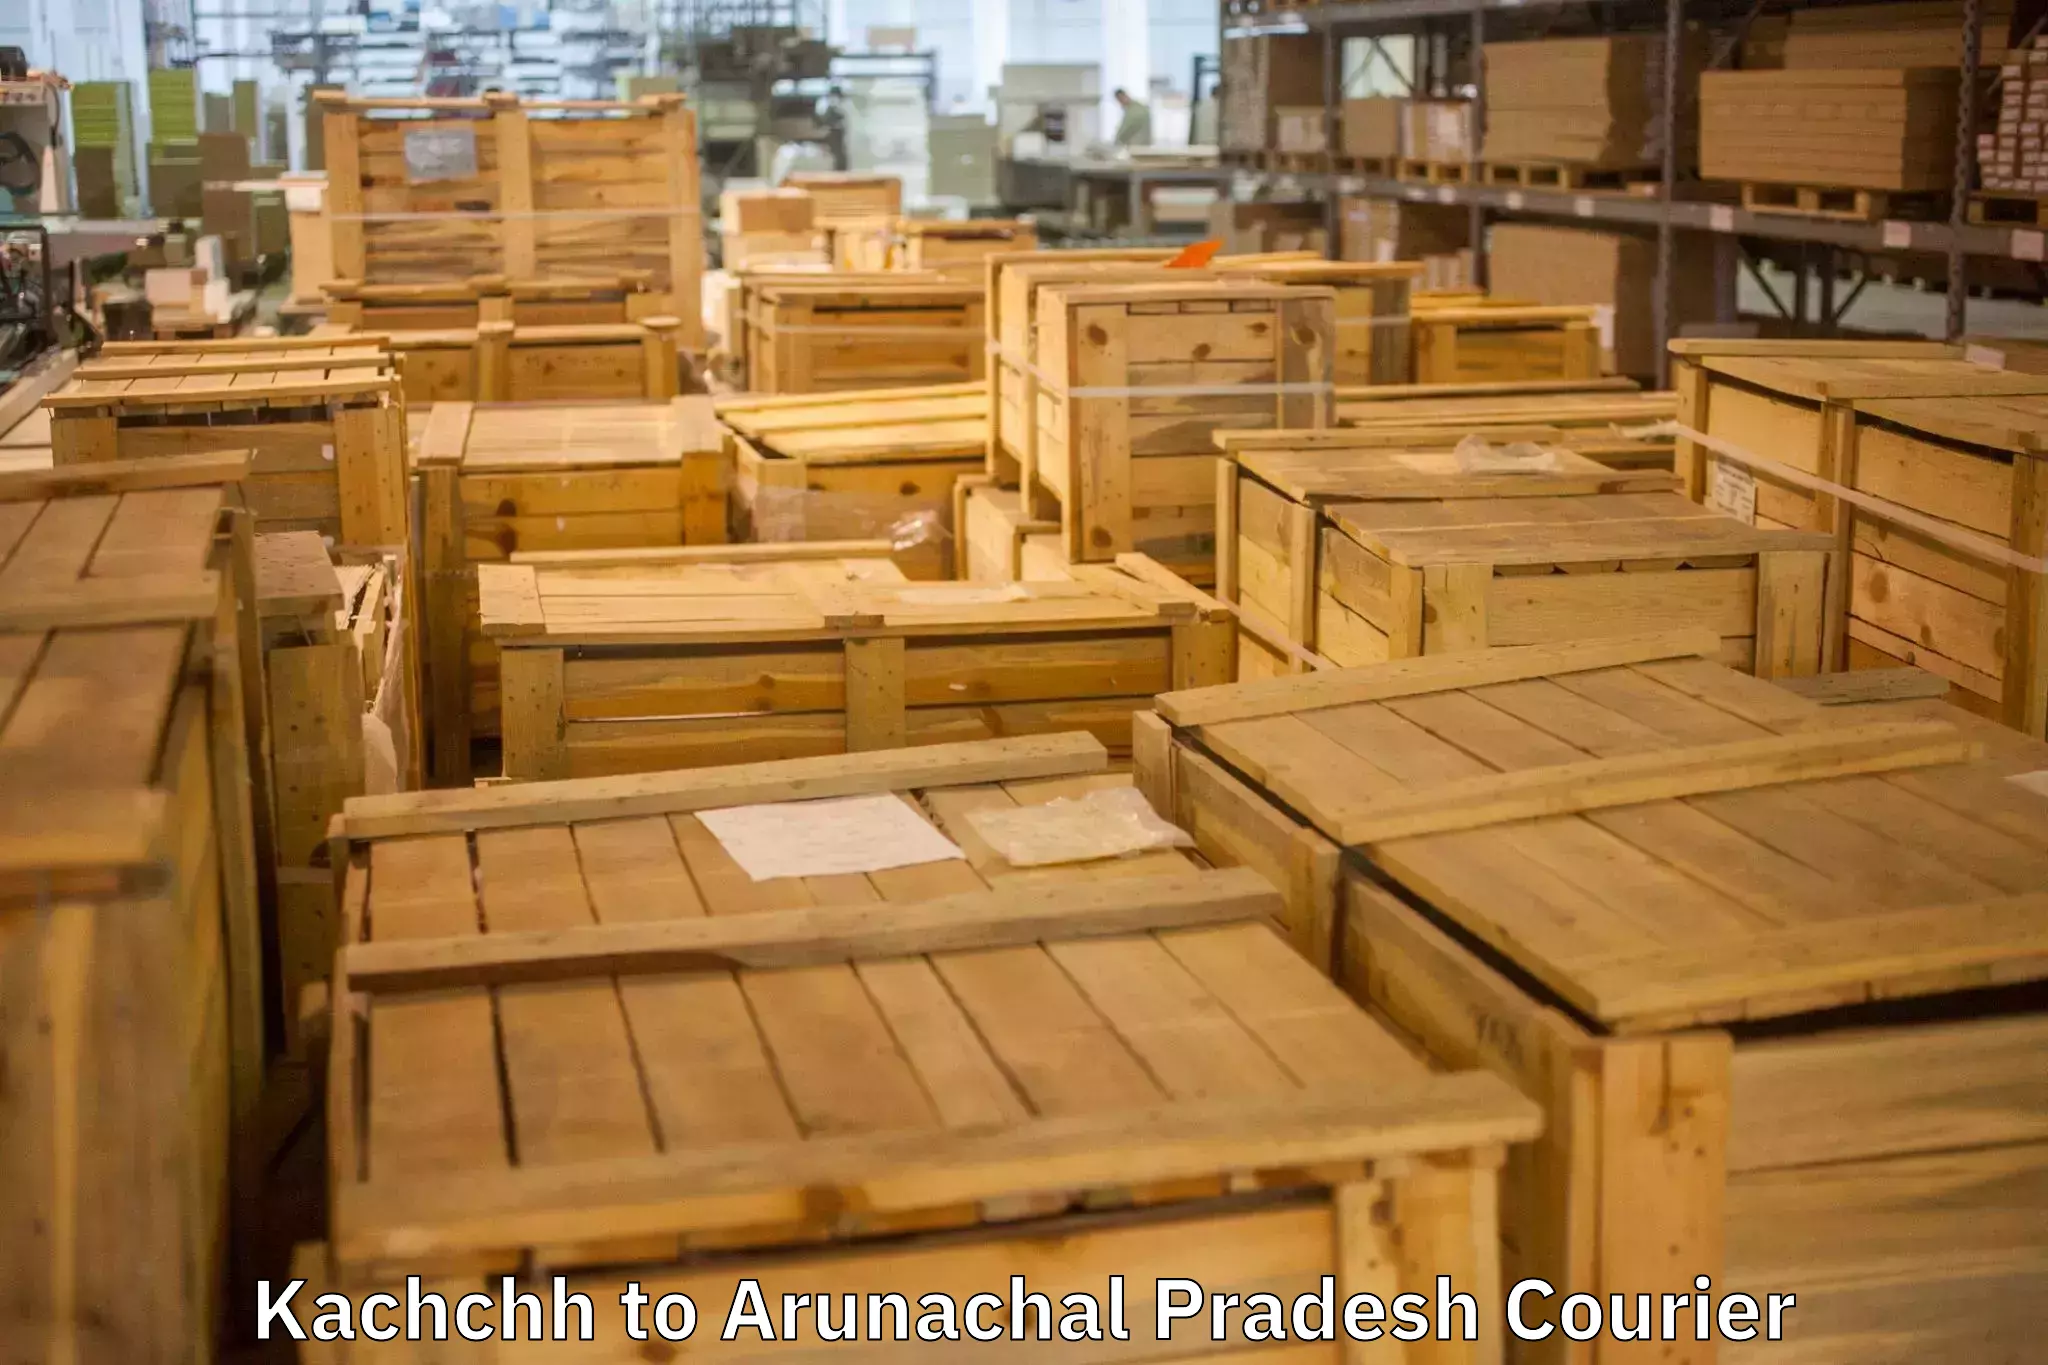 Full-service relocation Kachchh to Arunachal Pradesh